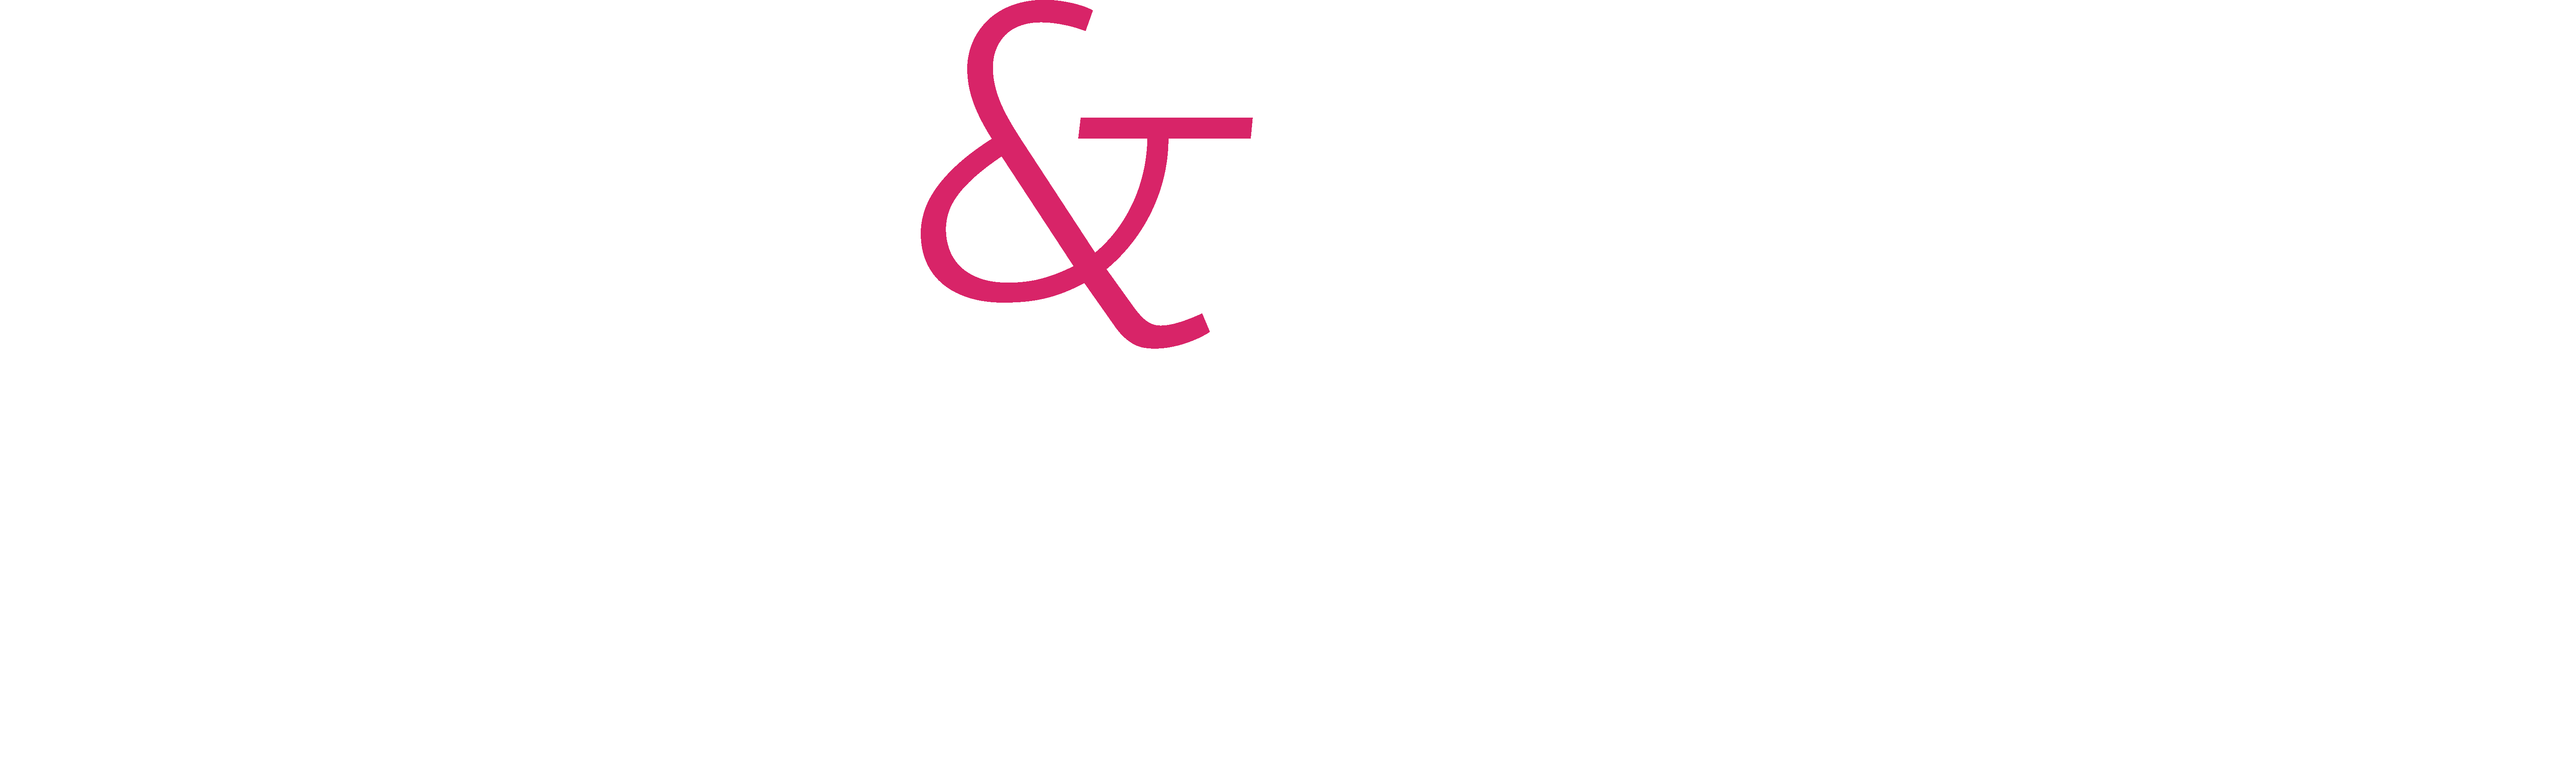 Post&Parcel Live